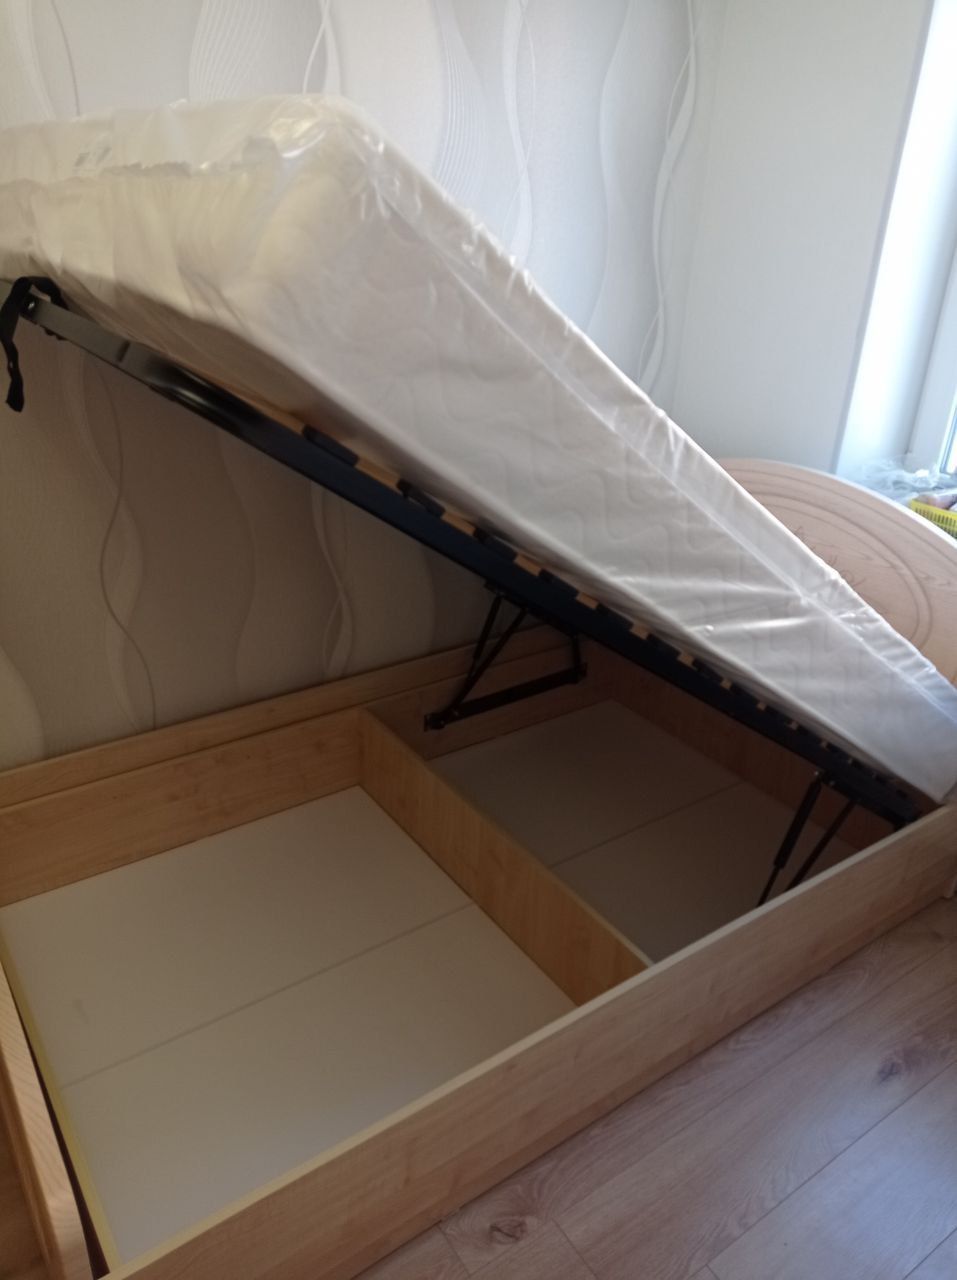 Двуспальная кровать "Натали" 180х190 с подъемным механизмом цвет клен / ясень бежевый изножье низкое